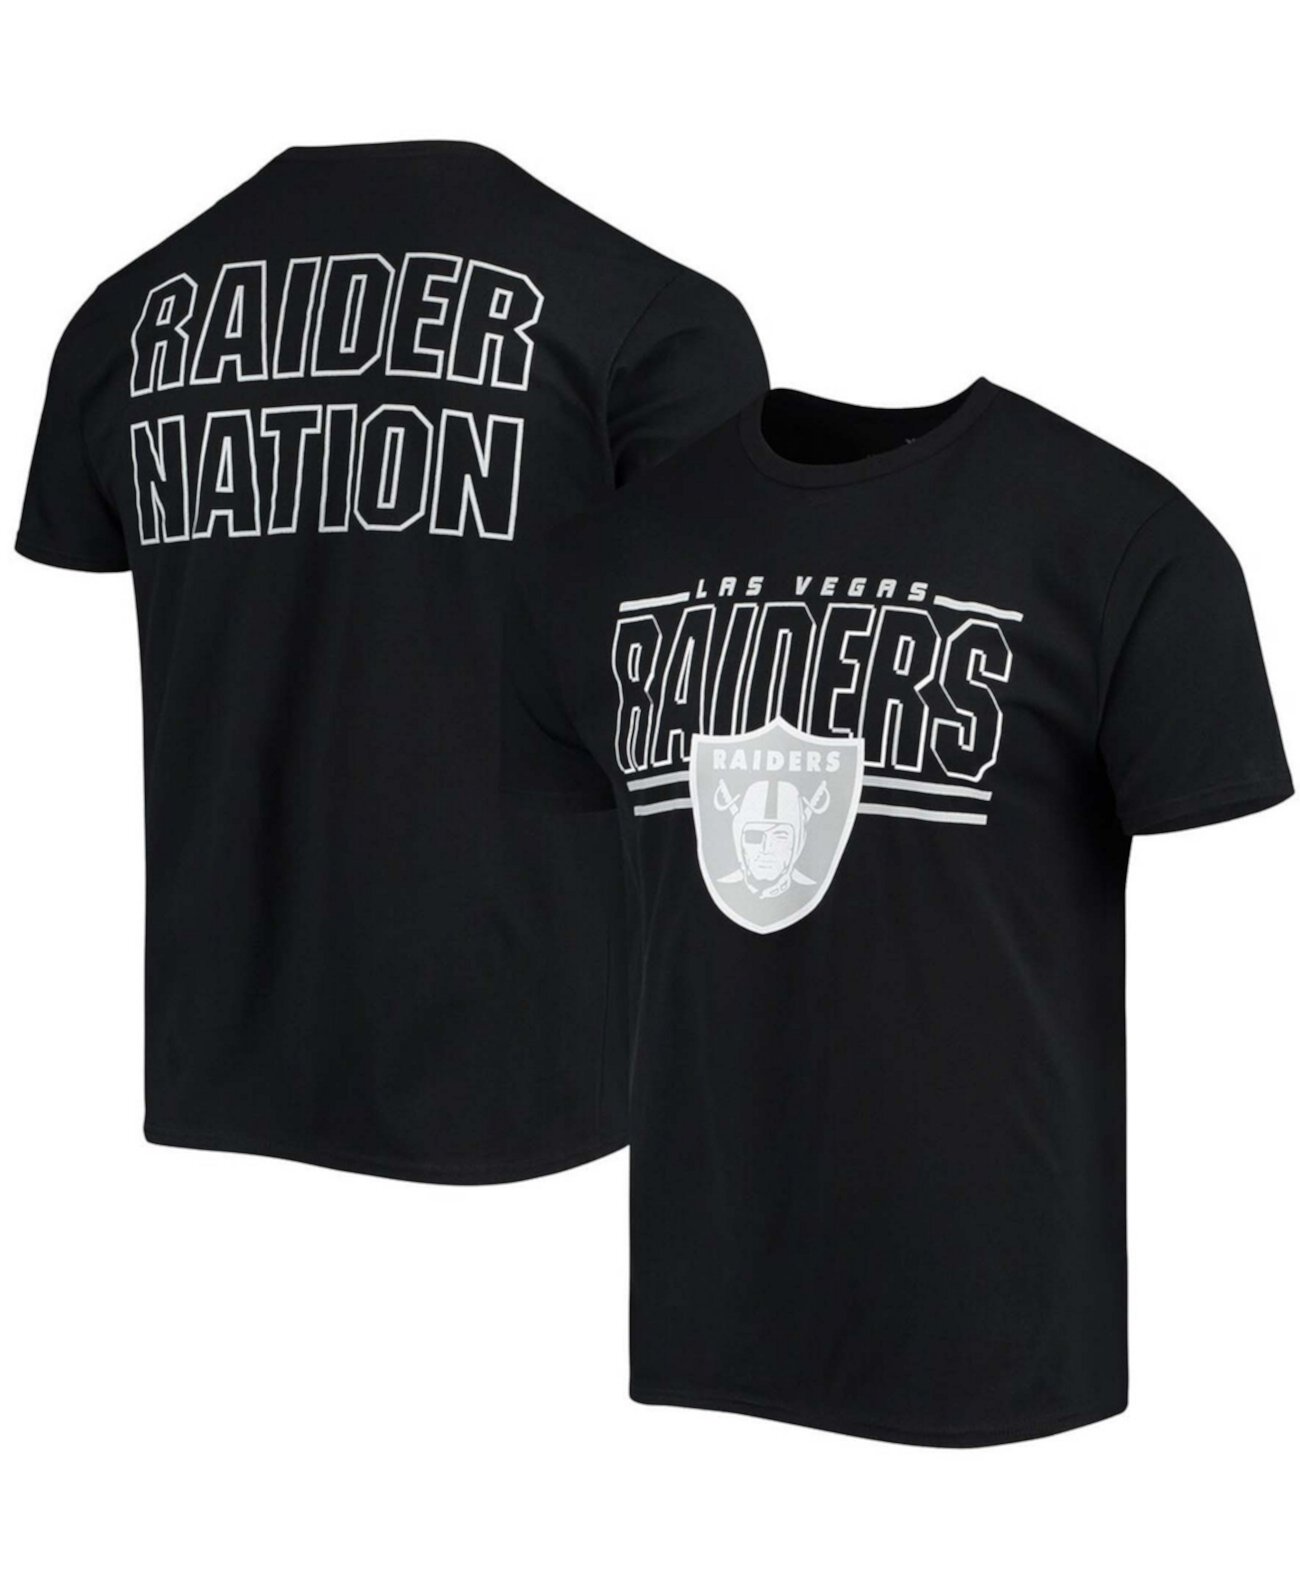 Черная мужская футболка с надписью Las Vegas Raiders 2-Hit Junk Food